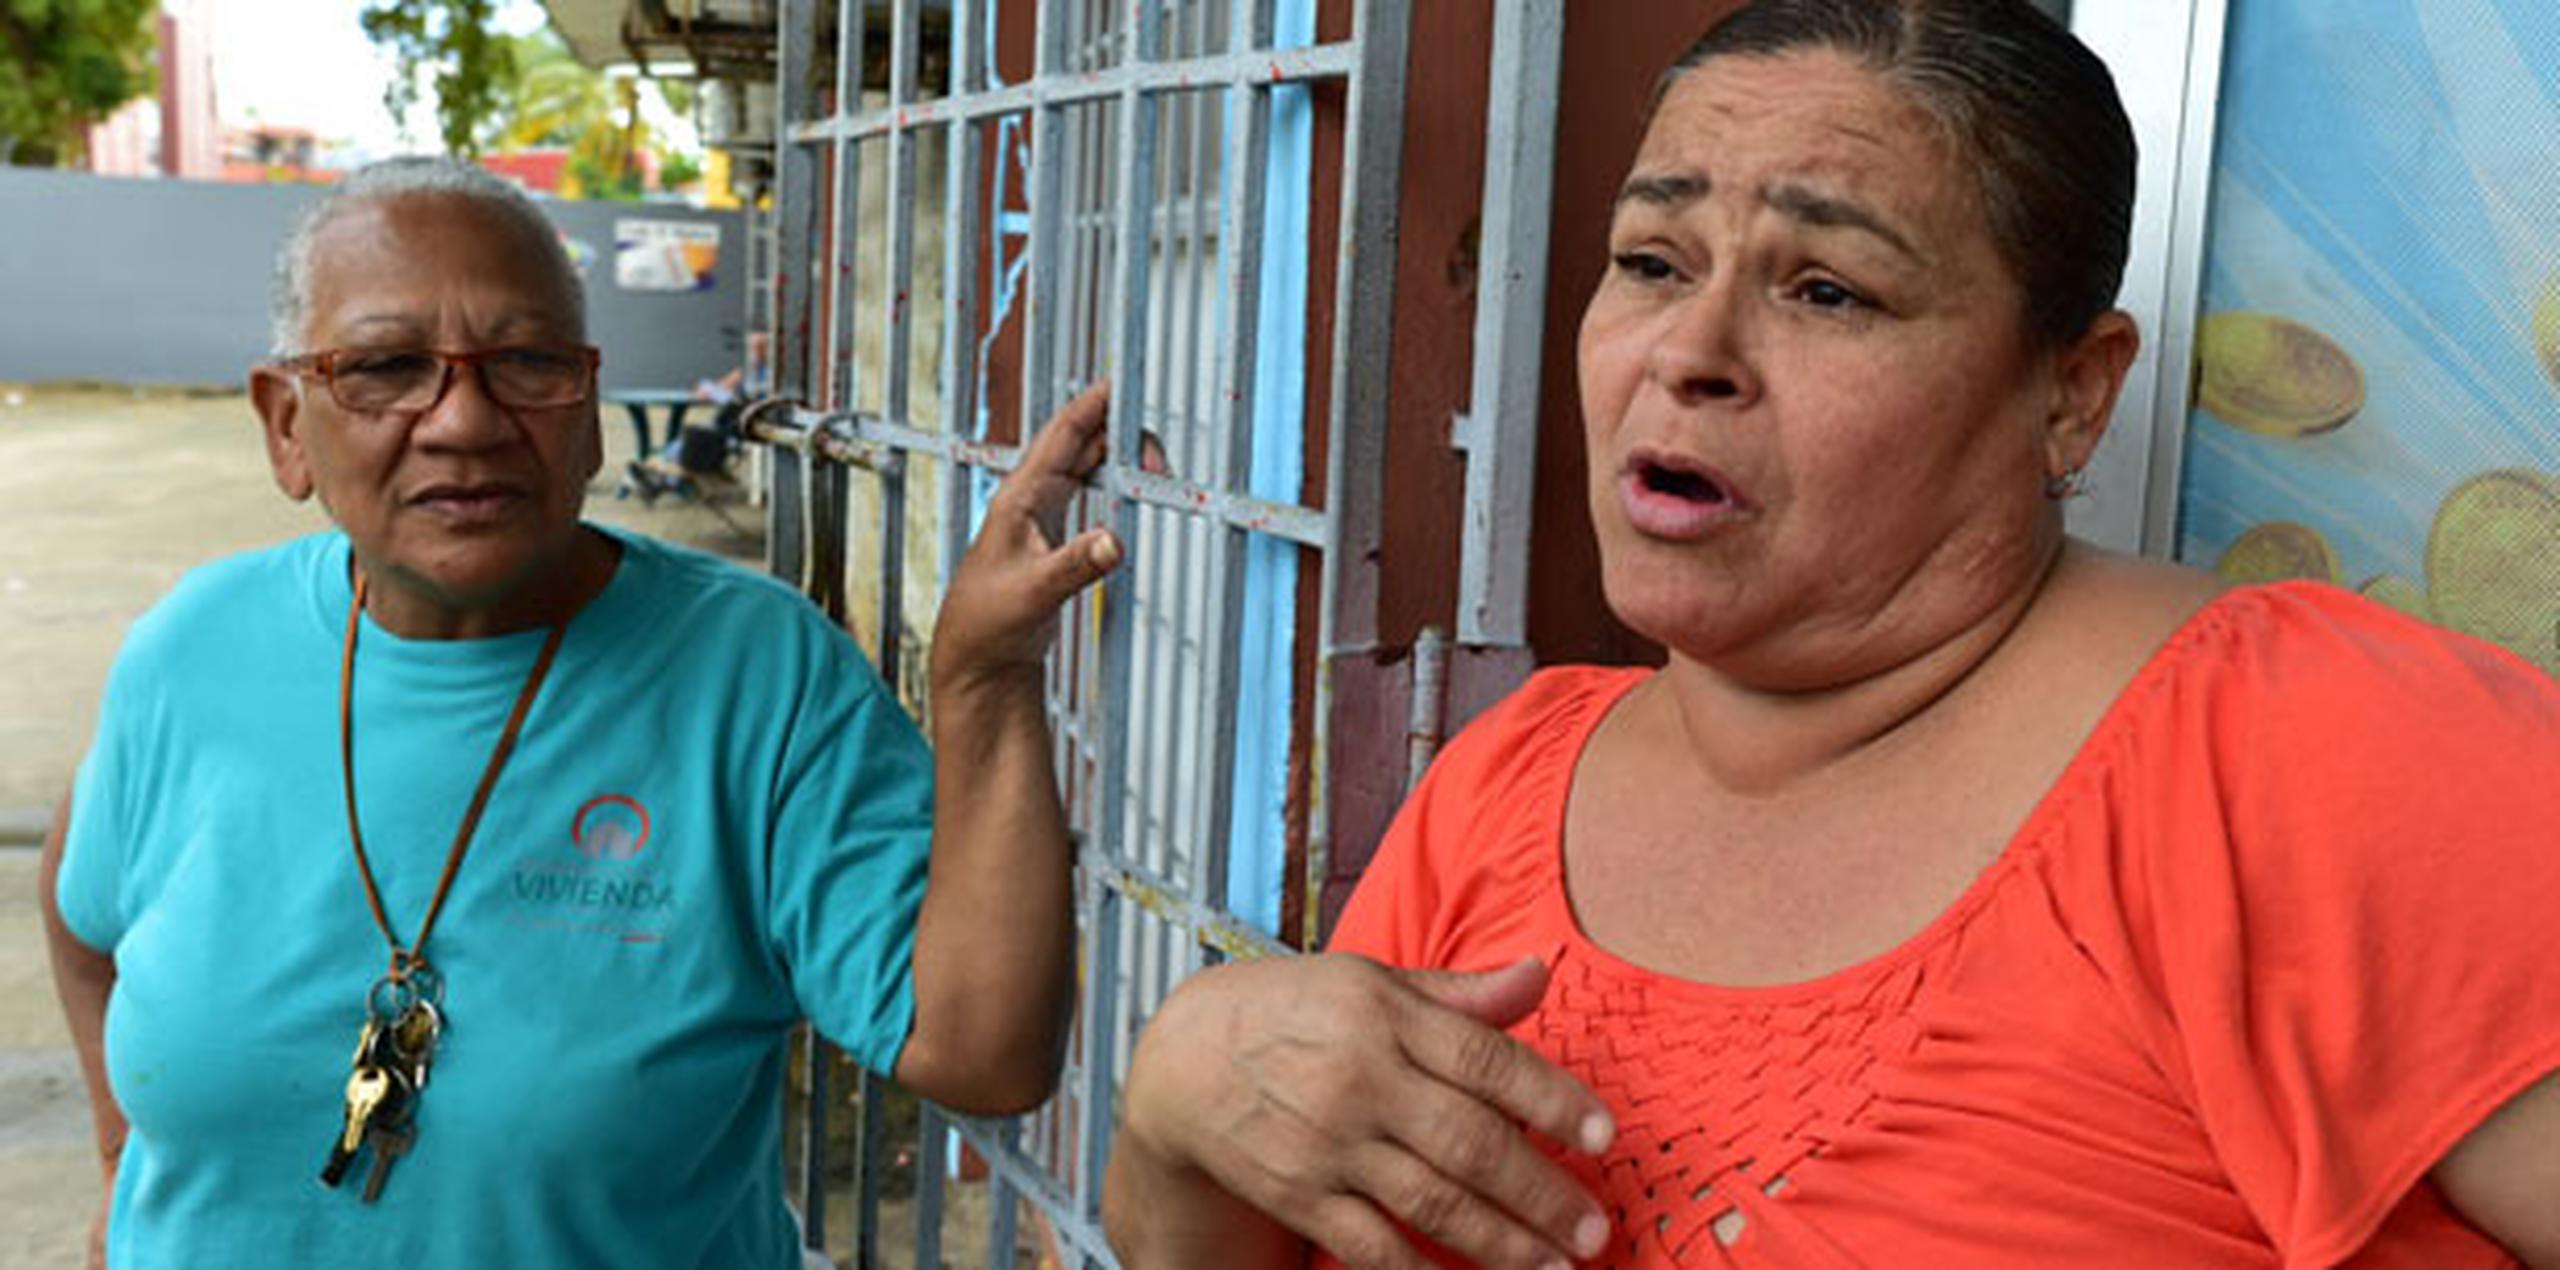 Para Celinés Hernández, la Policía se convirtió “en la protección de nosotros”, según dijo al referirse a sus vecinos en la entrada de una agencia hípica ubicada al lado del residencial. (luis.alcaladelolmo@gfrmedia.com)